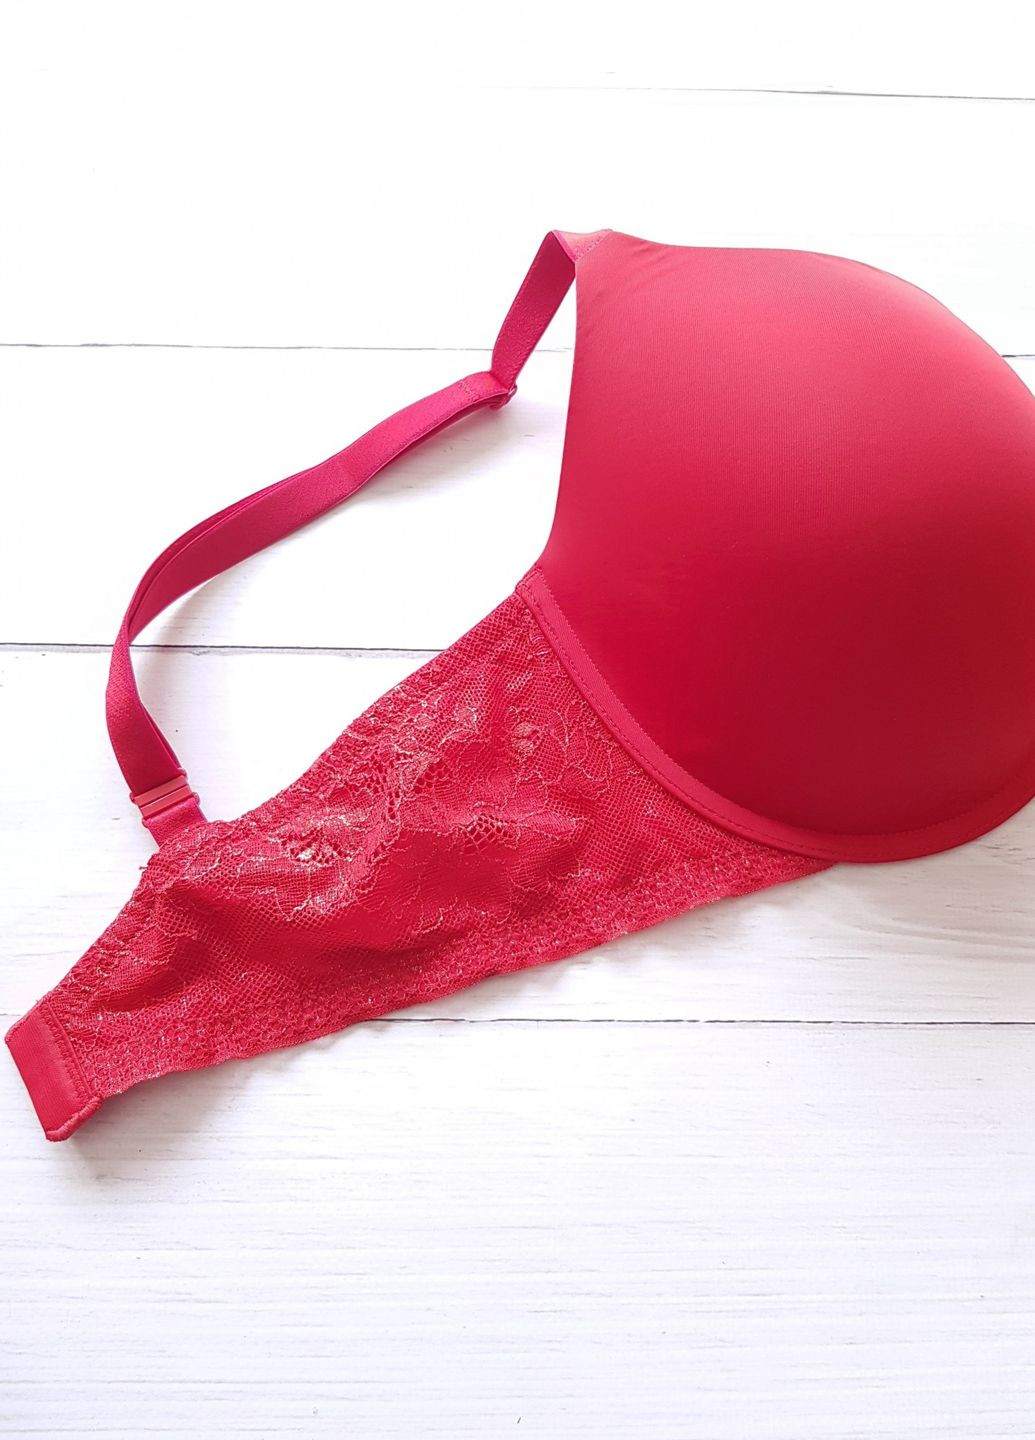 Красный бюстгальтер victoria`s secret красный с гипюром сзади Victoria's Secret